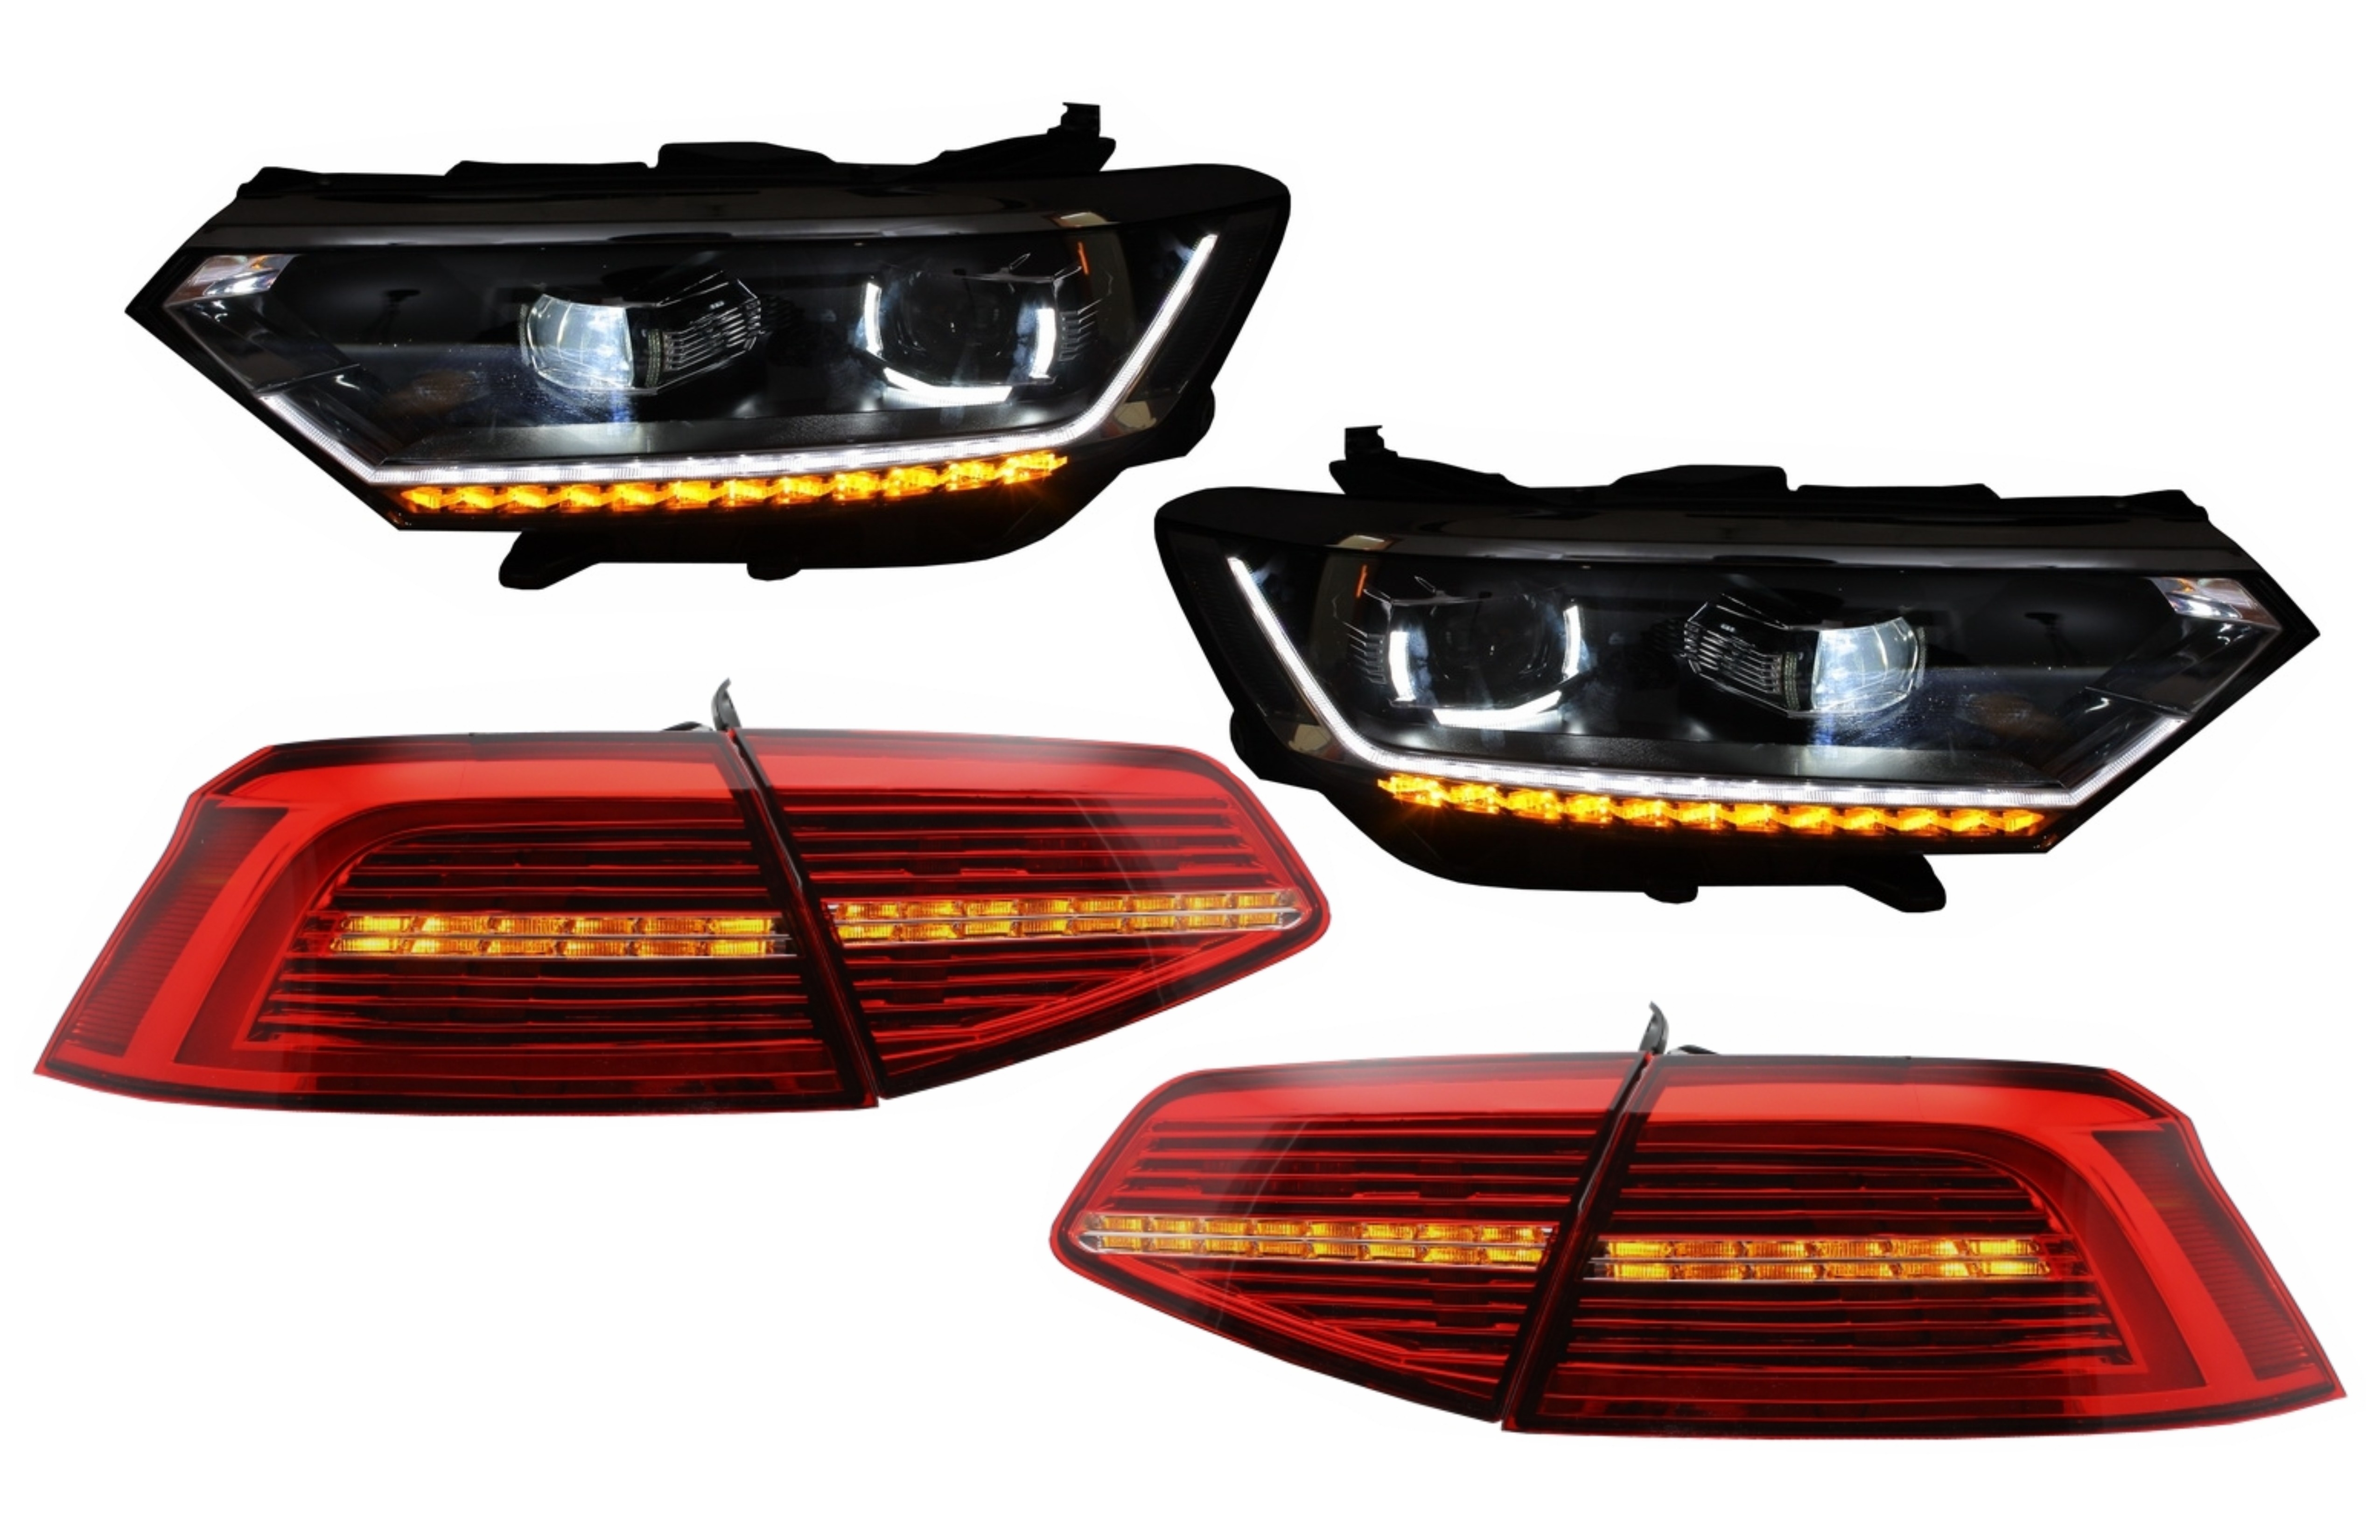 Teljes LED-es fényszórók LED-es hátsó lámpákkal, VW Passat B8 3G (2014-2019) Matrix R vonalhoz, szekvenciális dinamikus kanyarodó lámpákkal